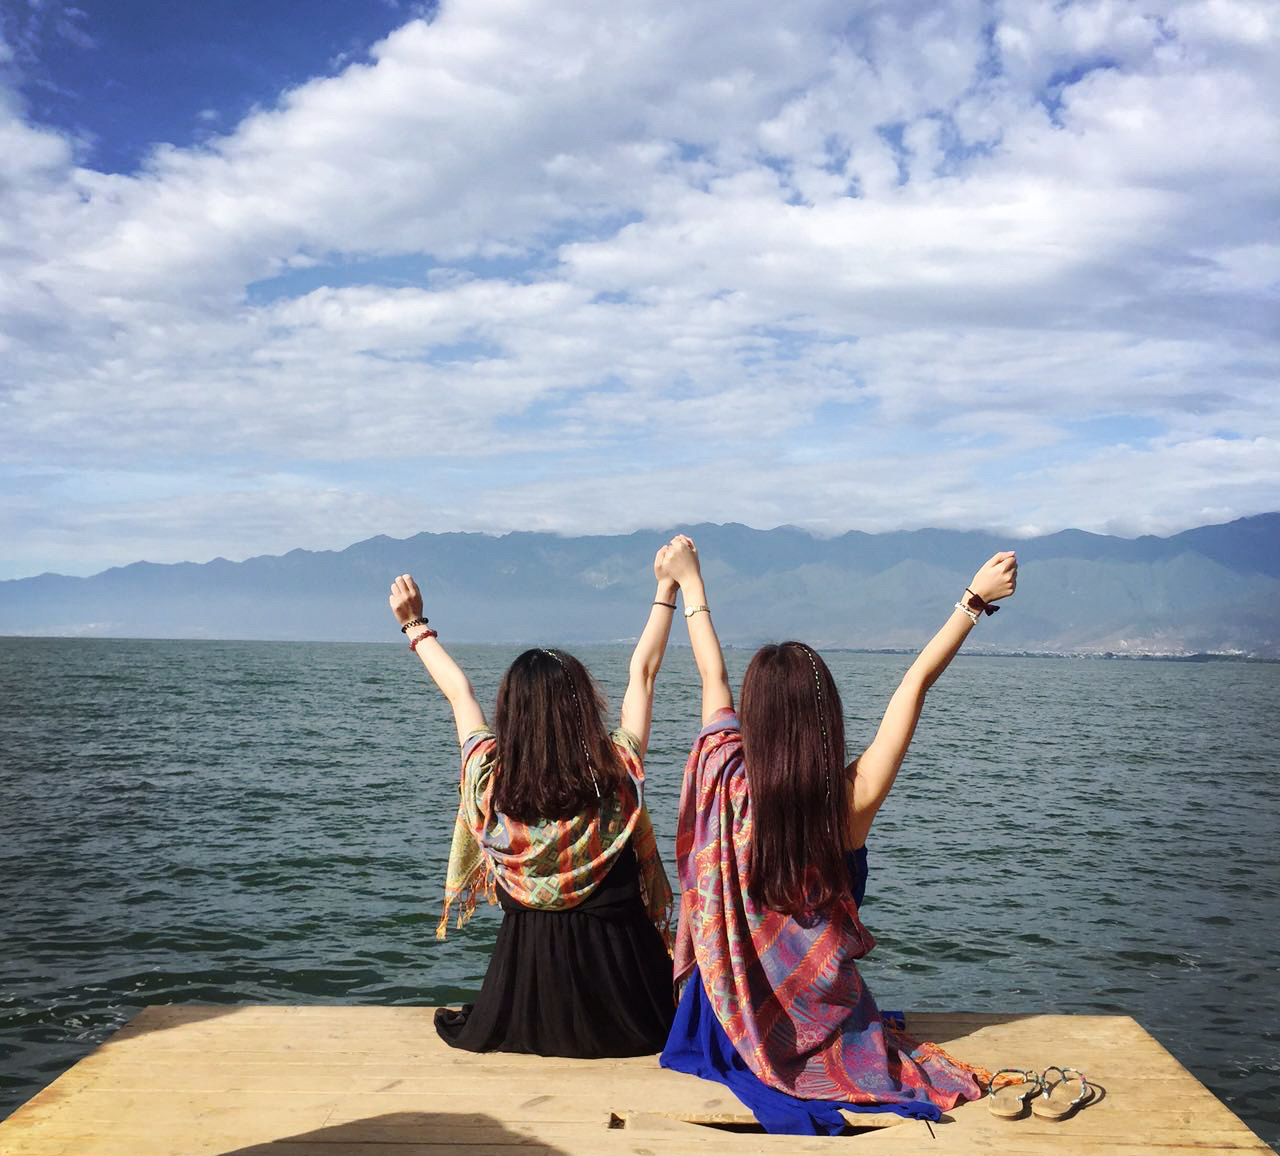 亲，幽蓝深邃的泸沽湖，浪漫神秘的摩梭族